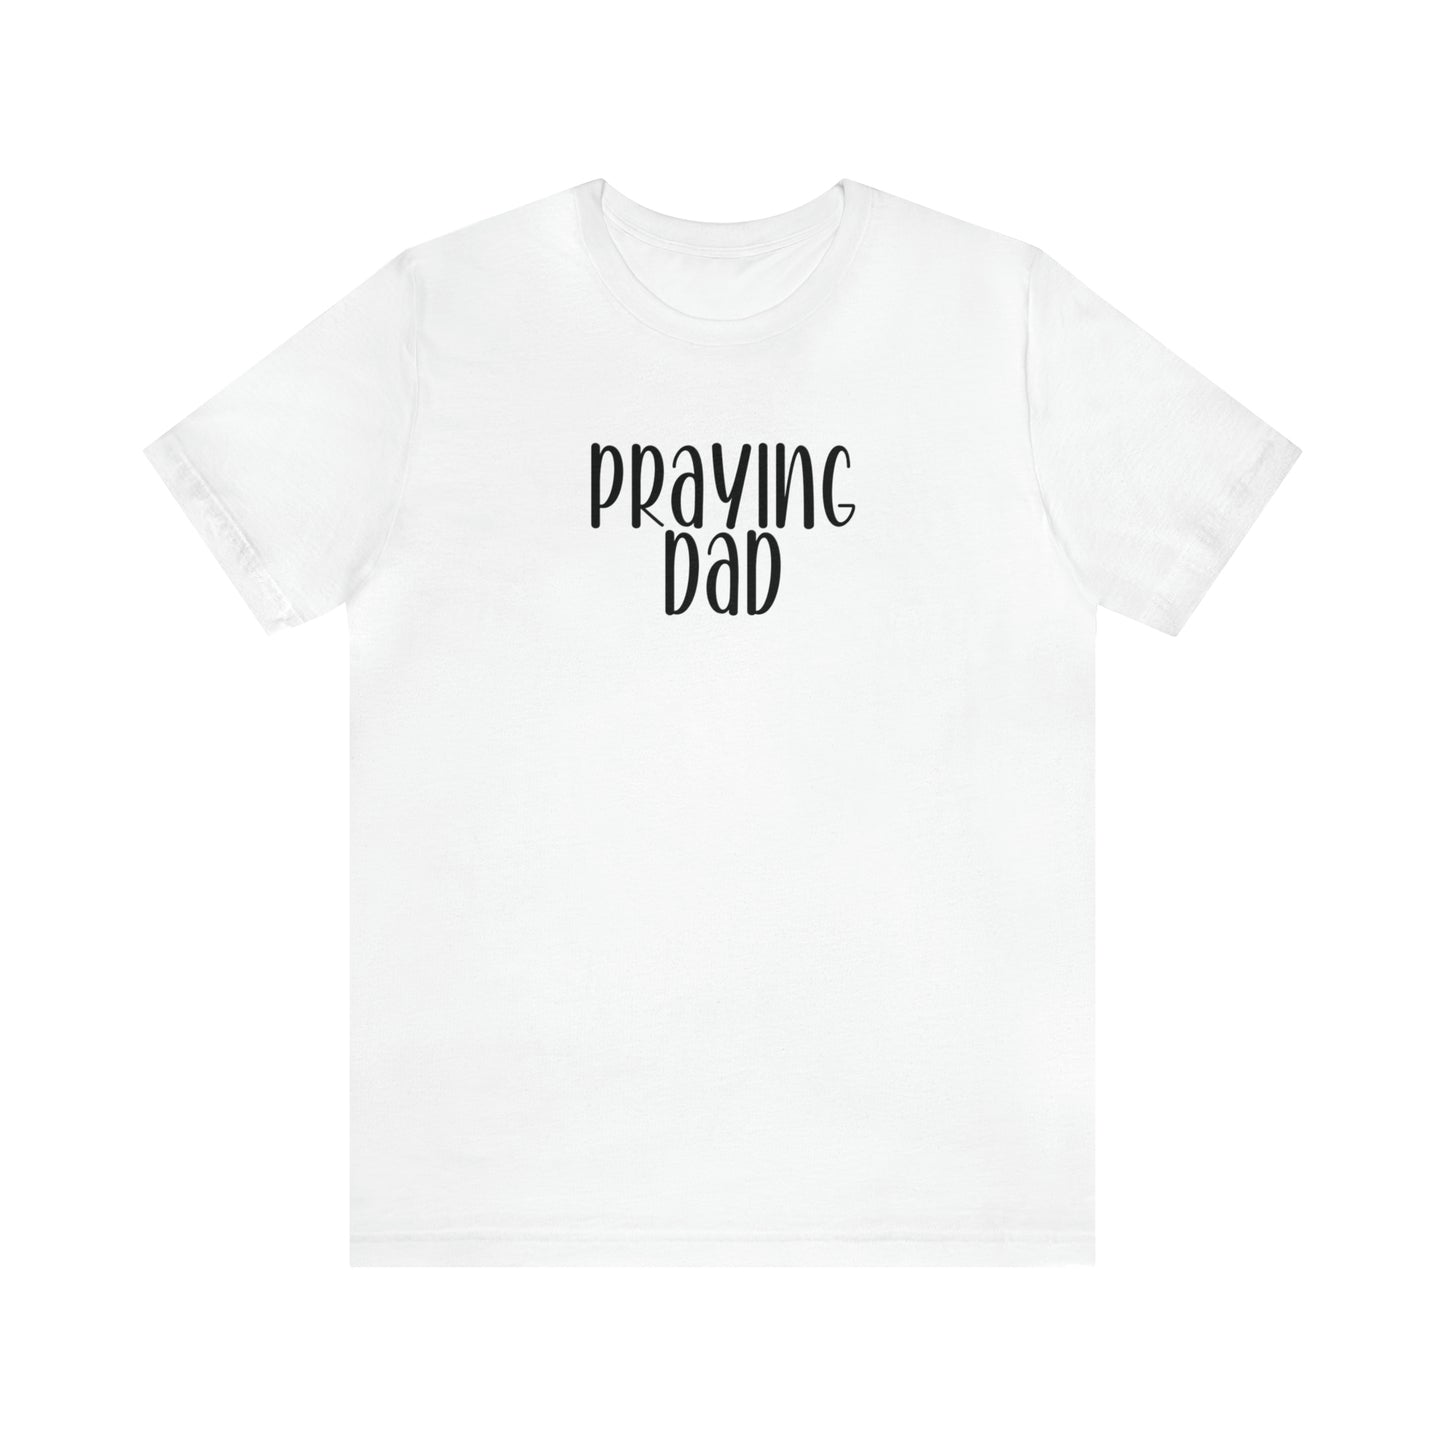 Praying Dad Shirt, Christian Tee